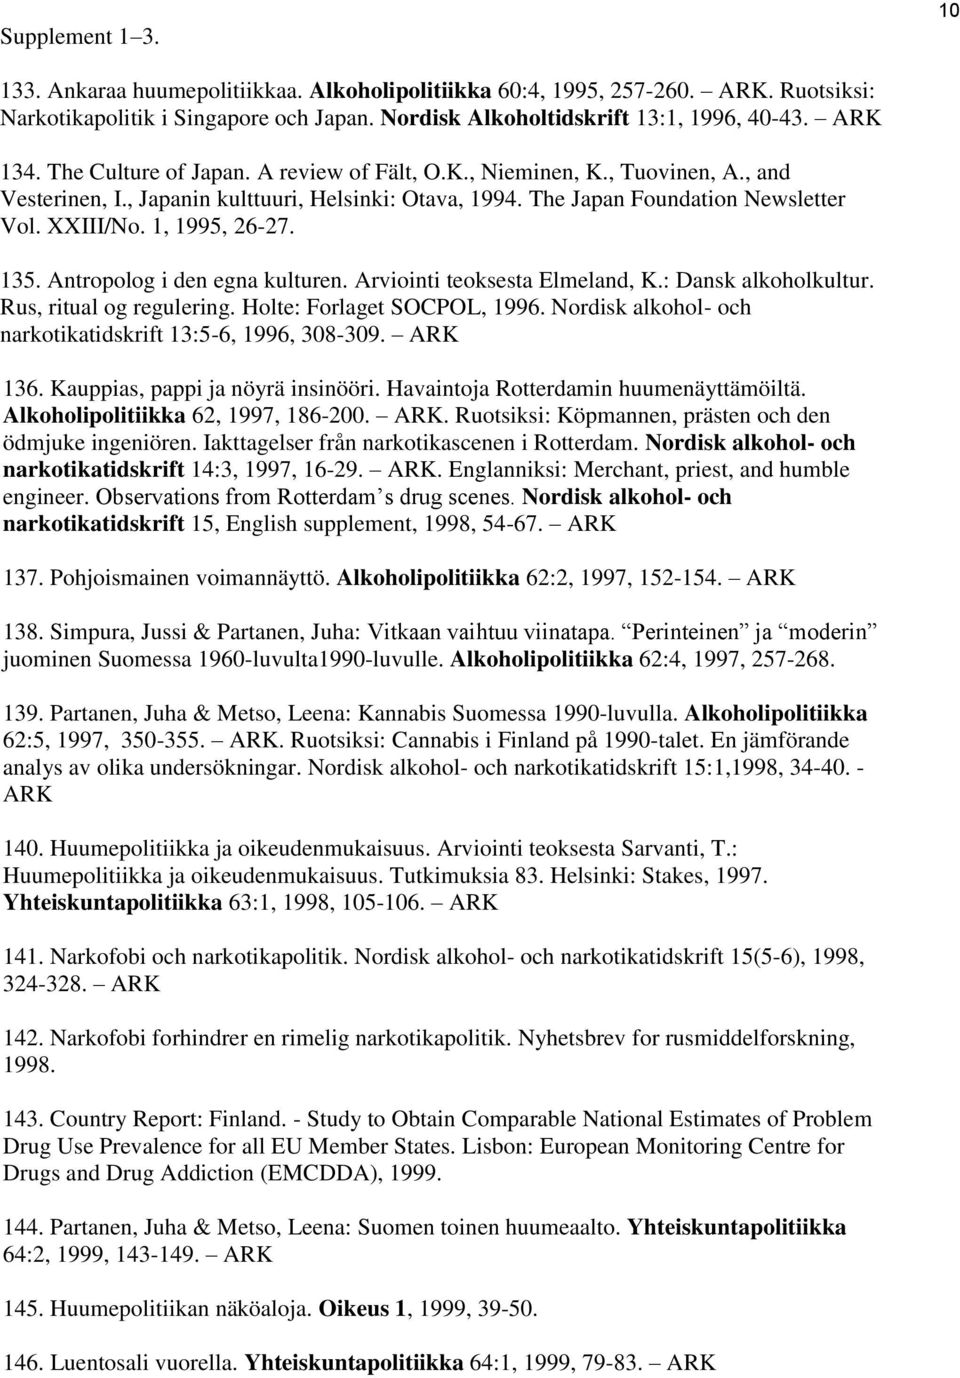 135. Antropolog i den egna kulturen. Arviointi teoksesta Elmeland, K.: Dansk alkoholkultur. Rus, ritual og regulering. Holte: Forlaget SOCPOL, 1996.